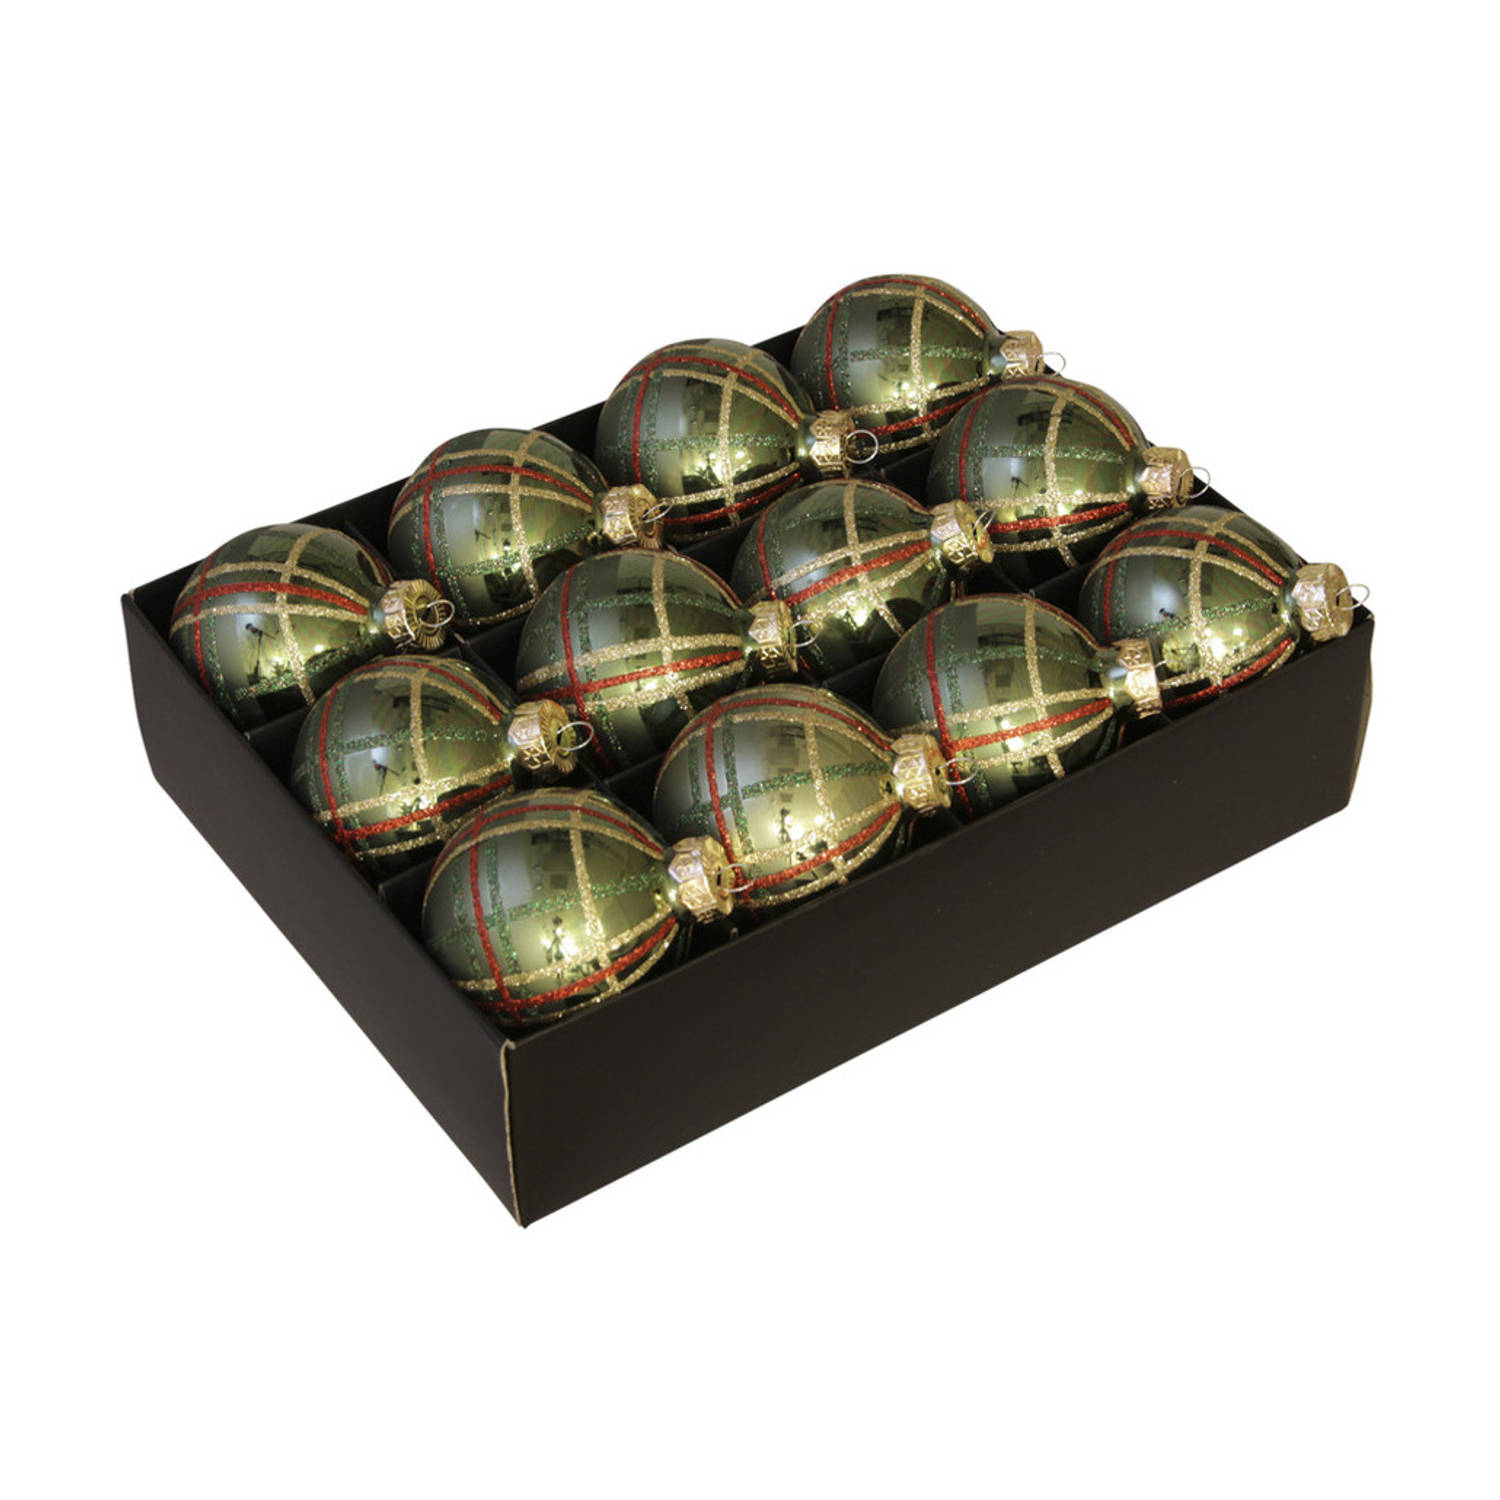 12x stuks luxe glazen gedecoreerde kerstballen groen schotse ruit 7,5 cm - Kerstbal